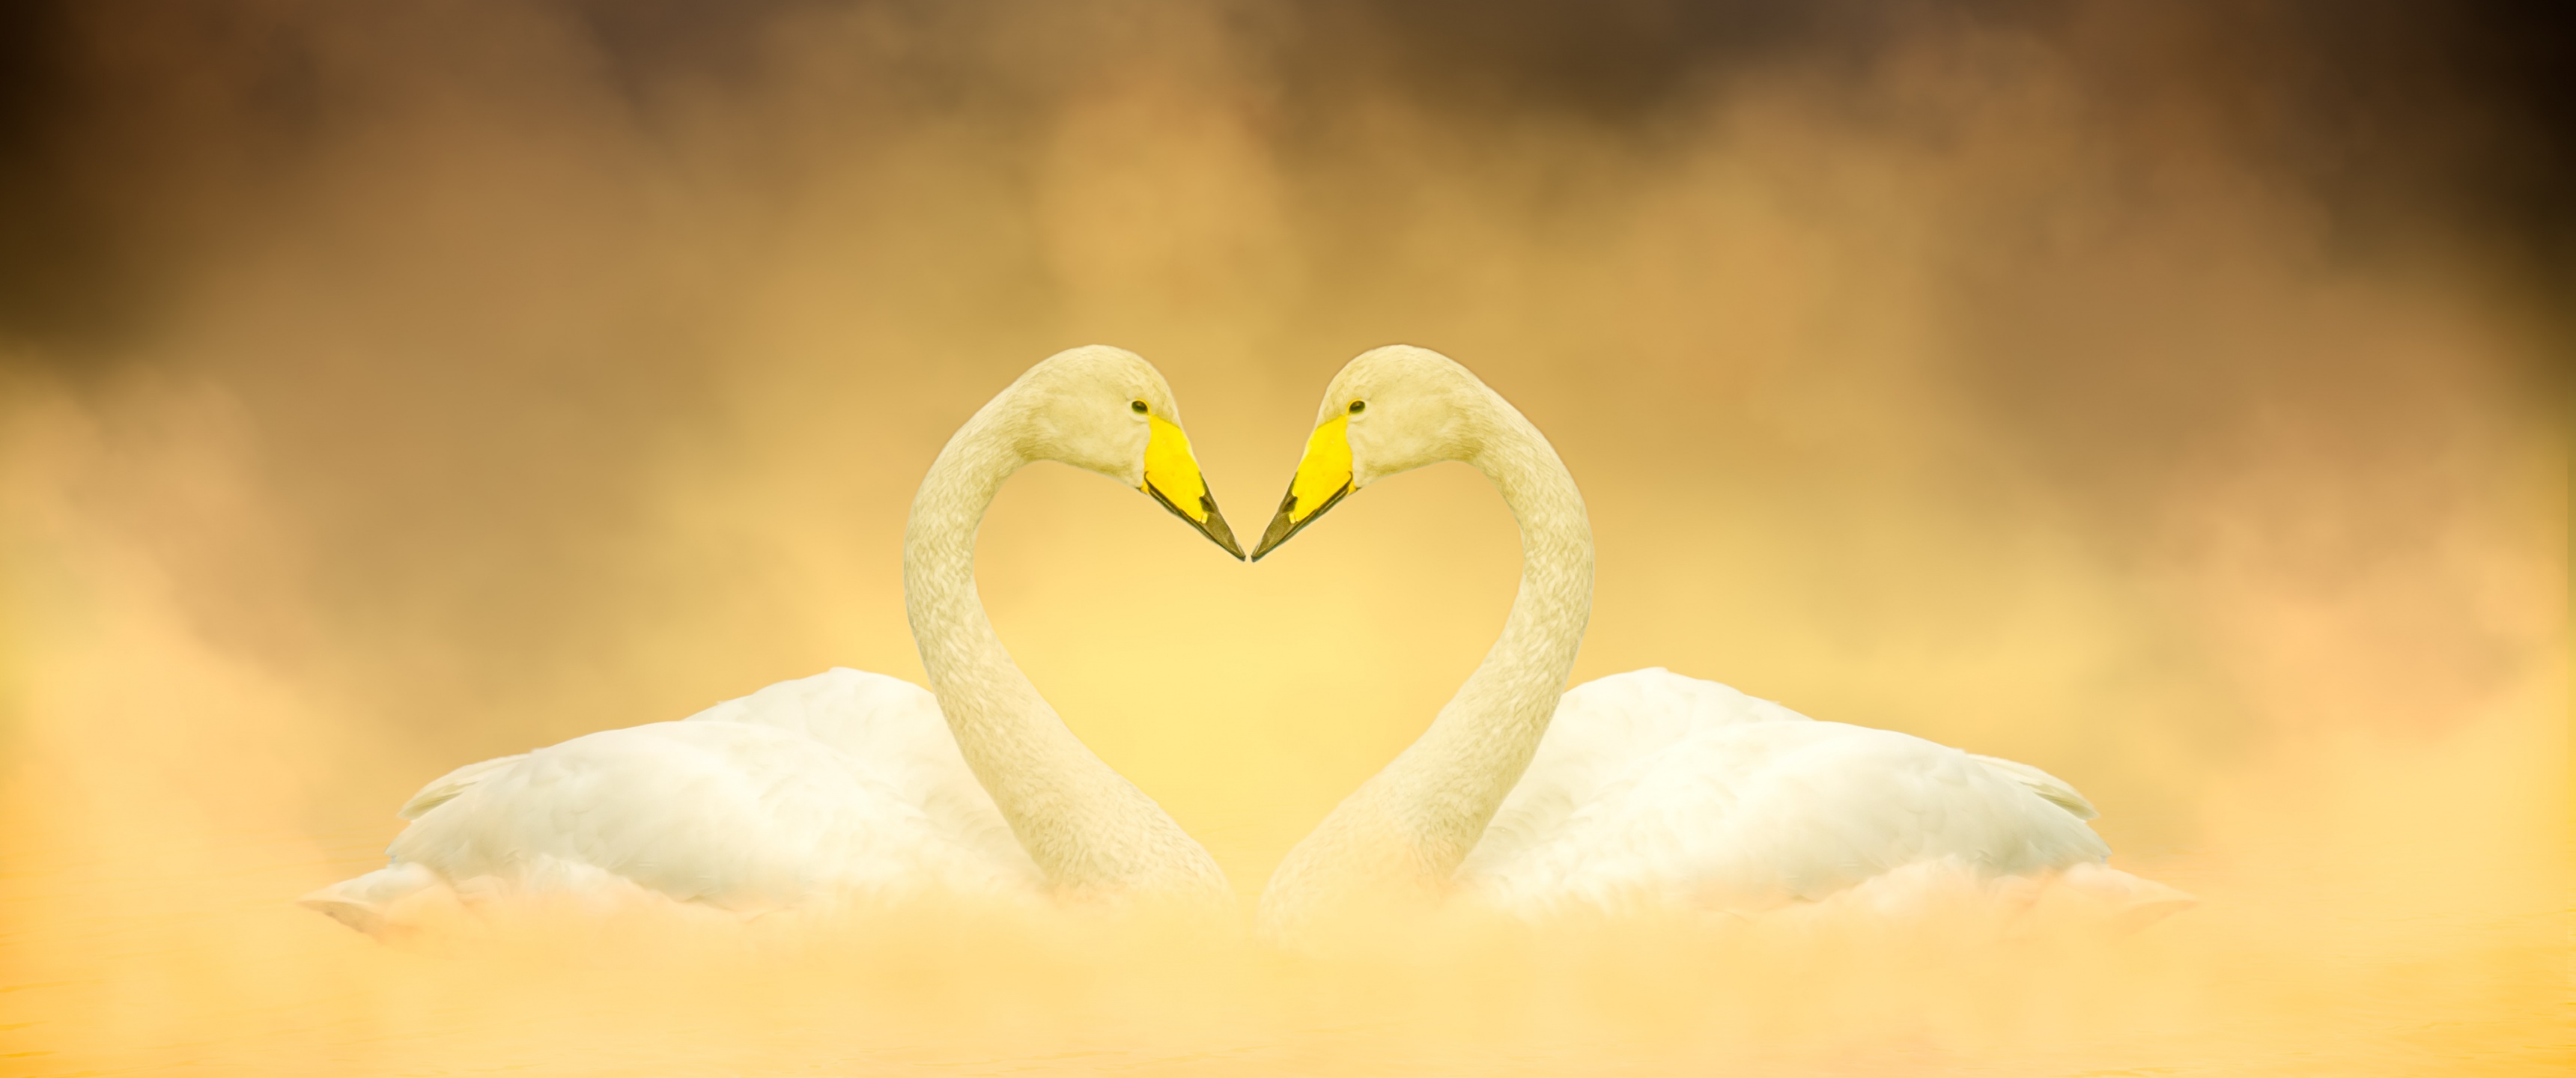 White Swan Wallpaper 4K, Love Birds, Heart shape, Animals, #5487